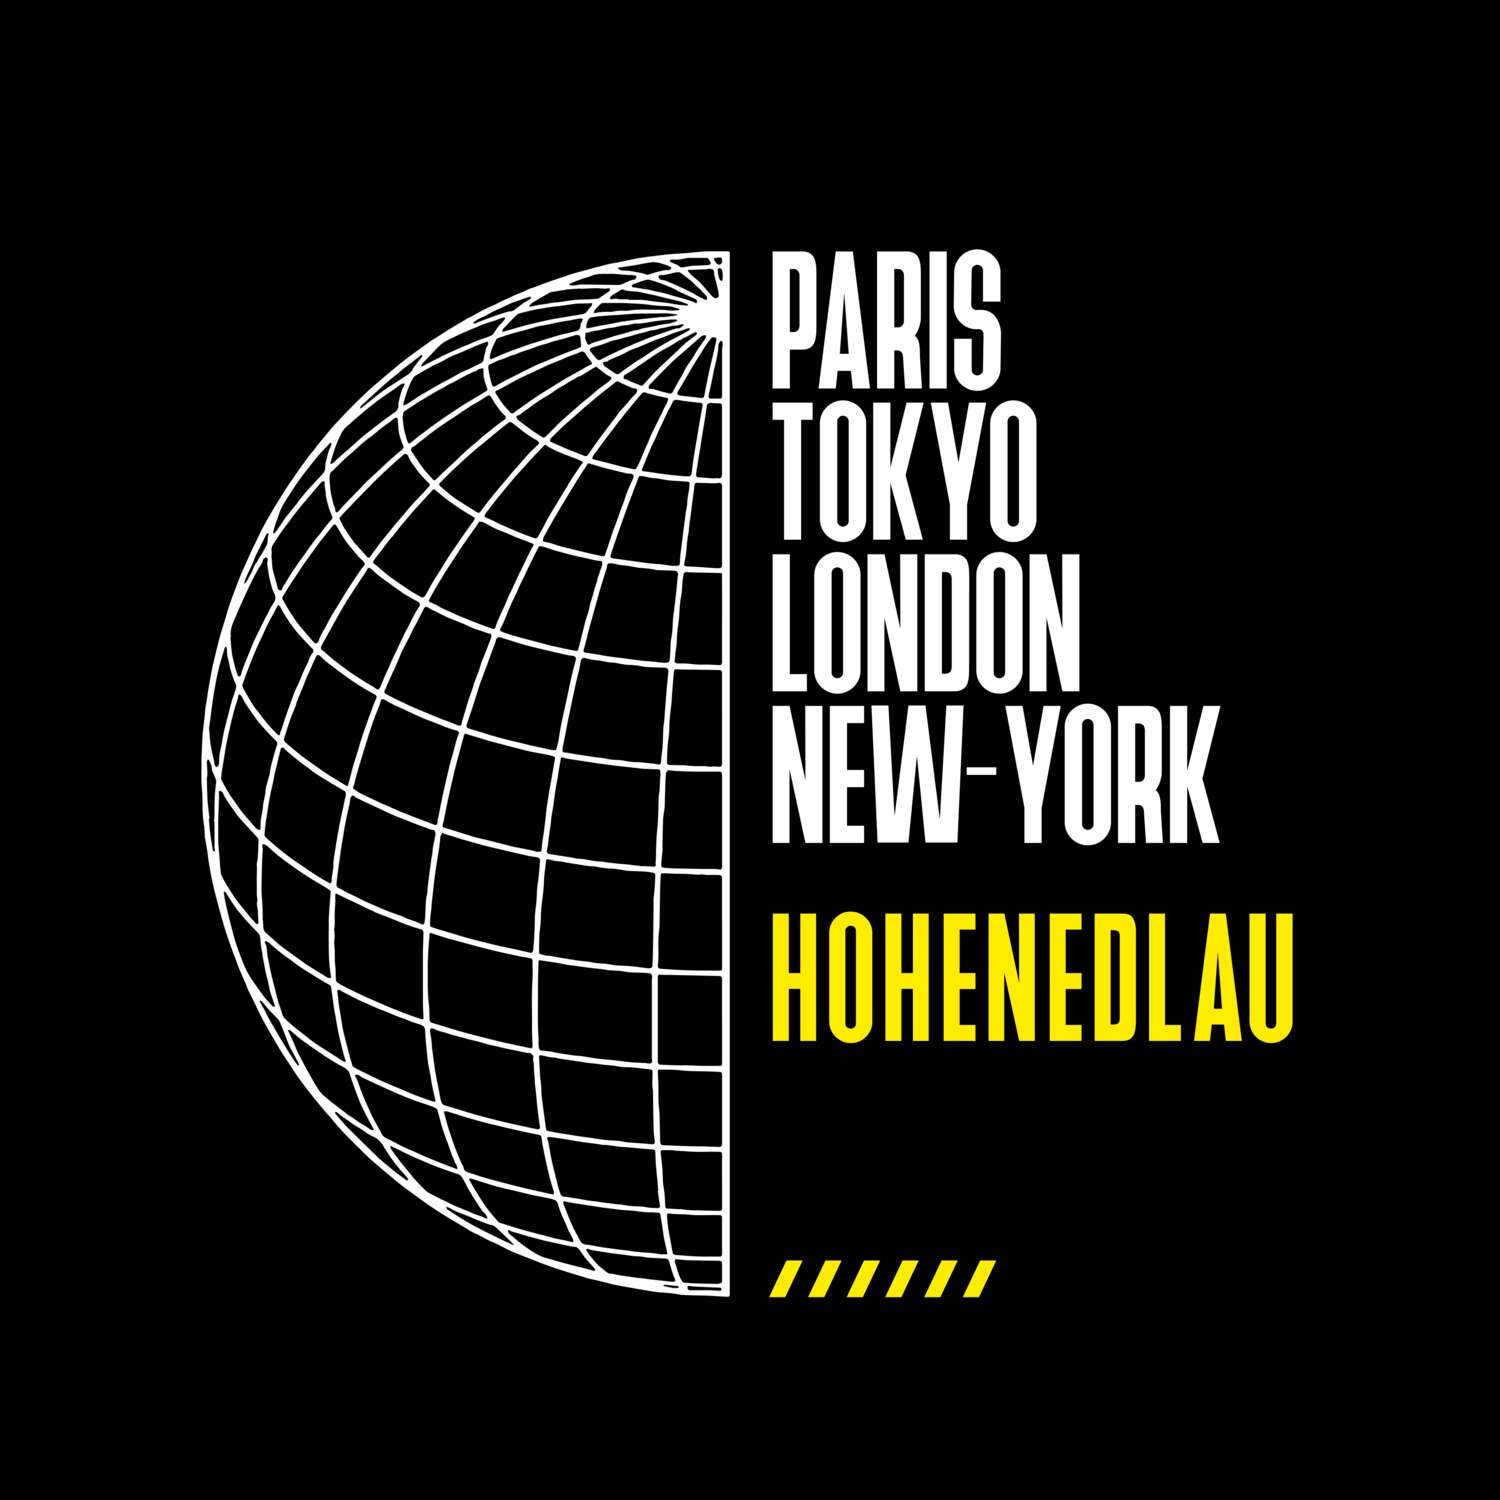 Hohenedlau T-Shirt »Paris Tokyo London«